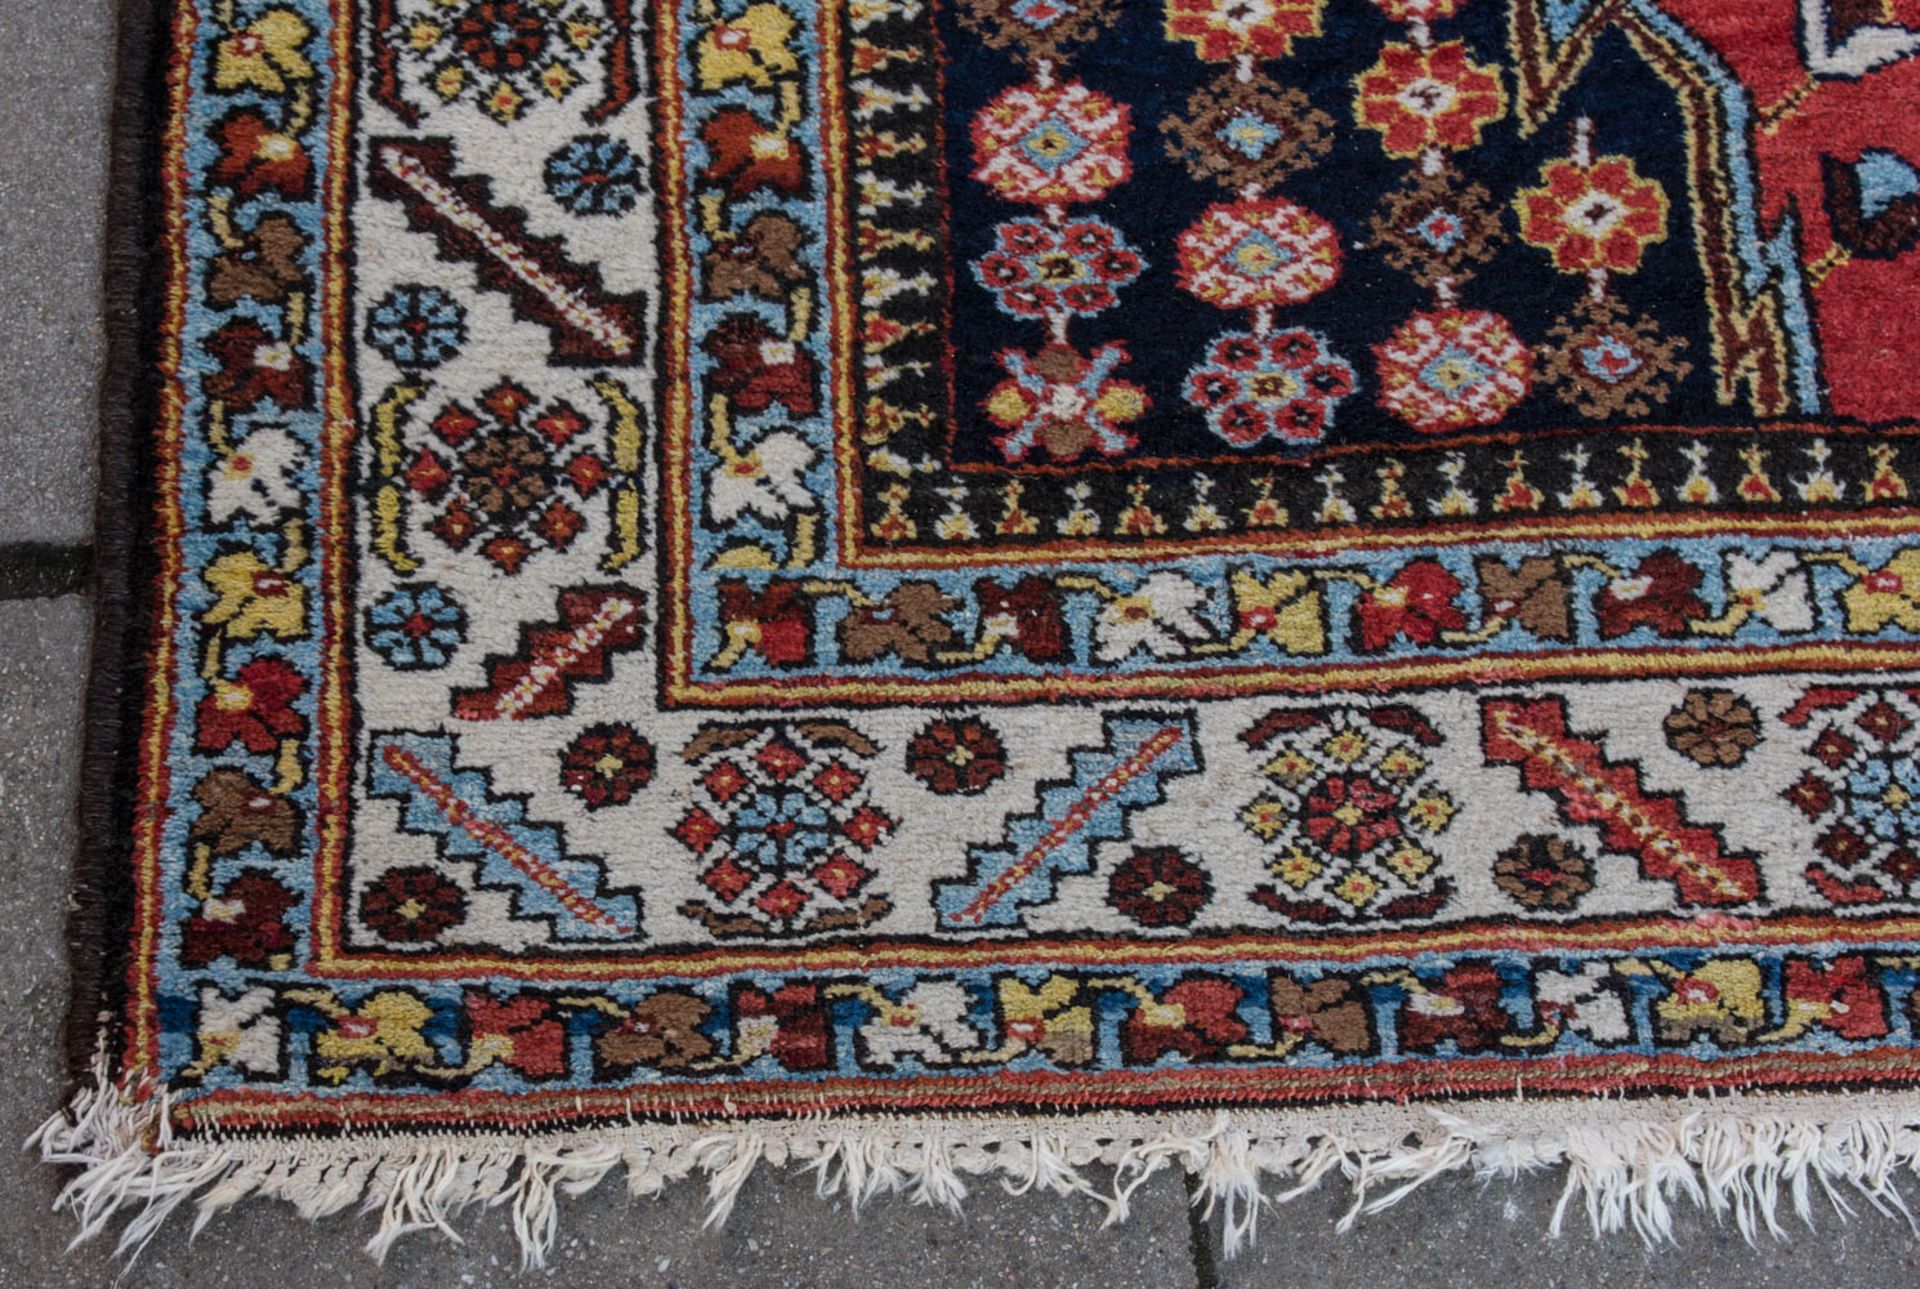 Läufer Teppich, Baumwolle.Ornamenrale und florale Muster.420 x 150 cm. - Image 7 of 8